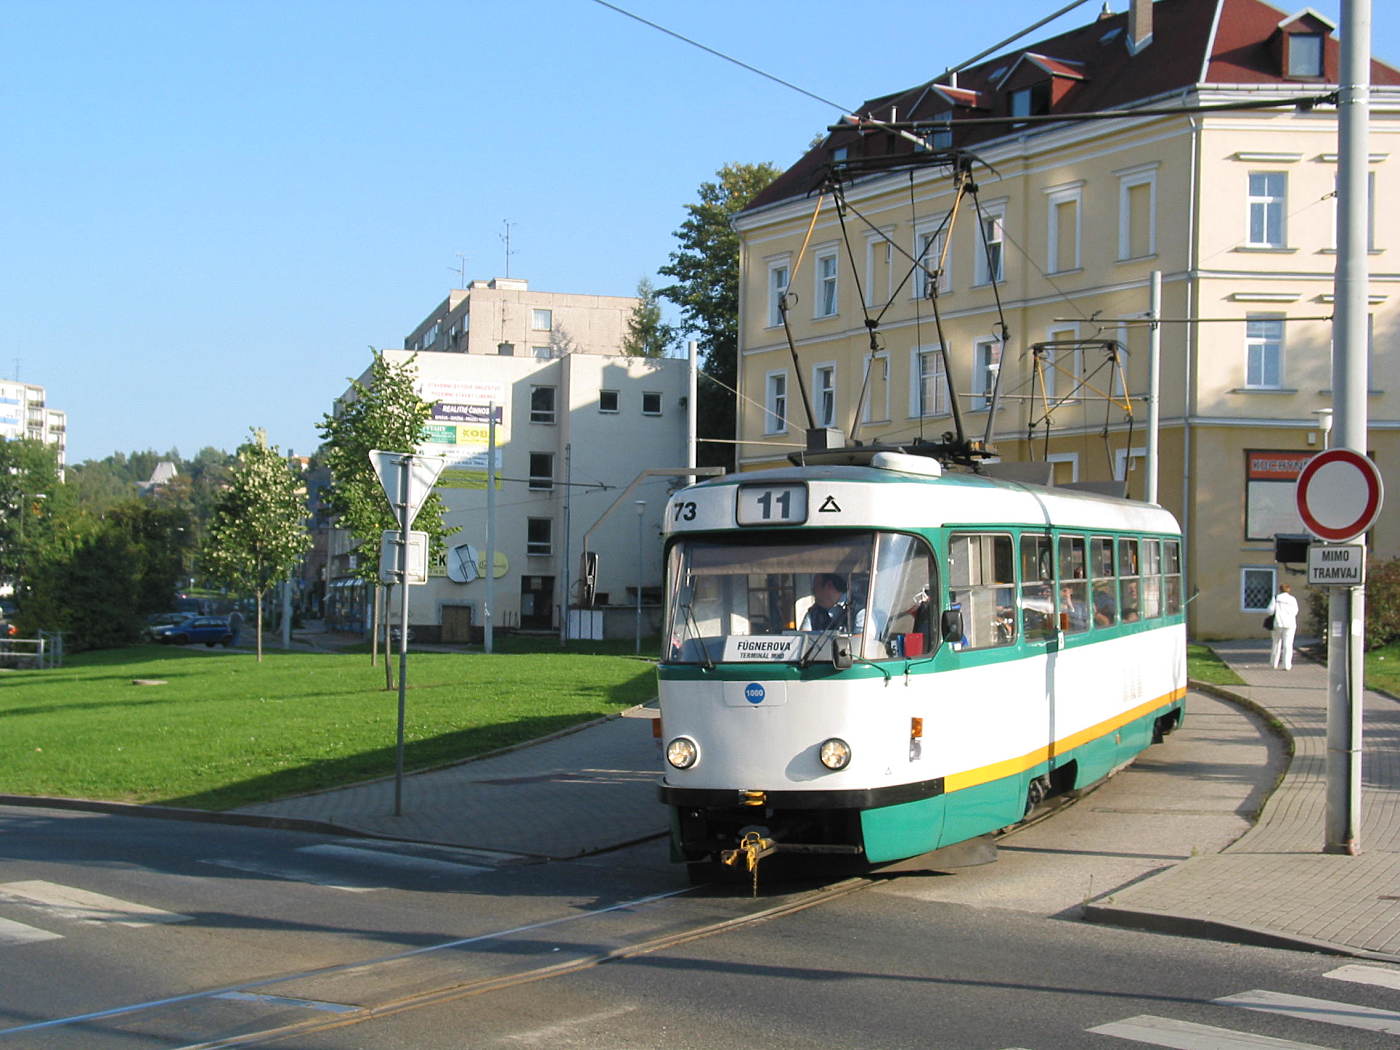 Tatra T3m #73